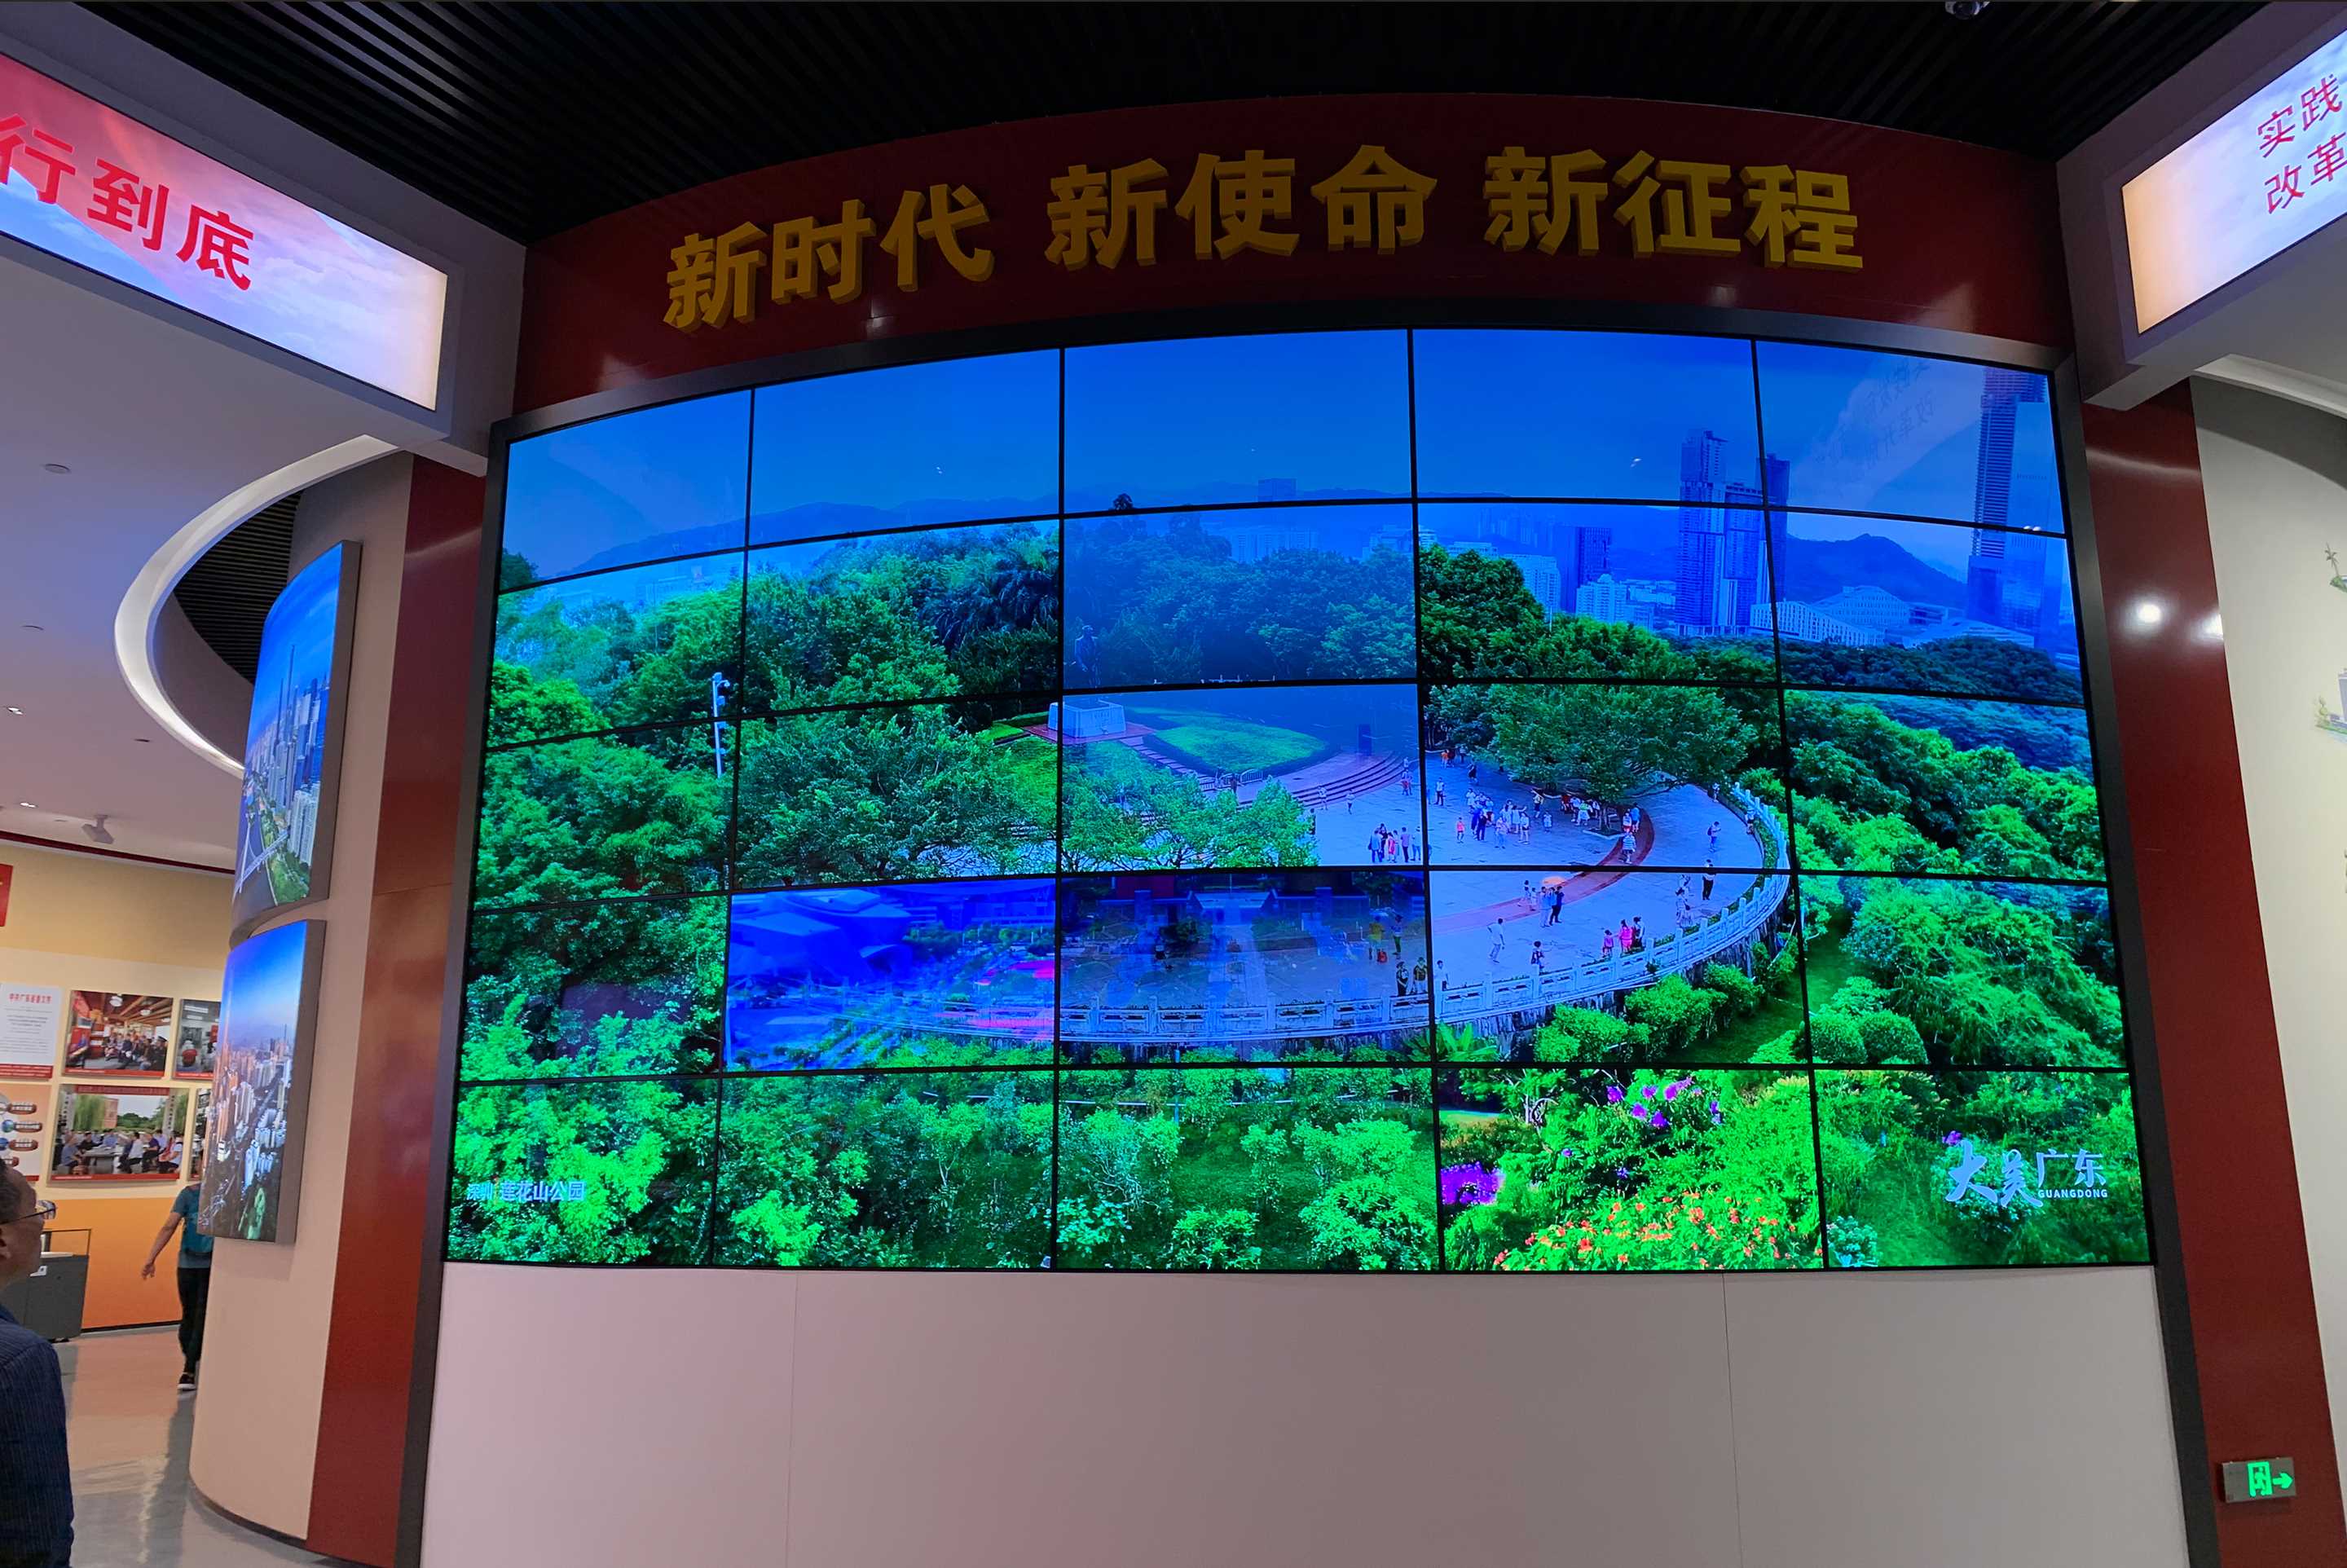 深圳博物馆中心位于深圳福田，打造了深圳改革开放以来的历史进程，博物馆通过LCD大屏幕展示了不同阶段立式文化阶段，打造了震撼的视觉效果